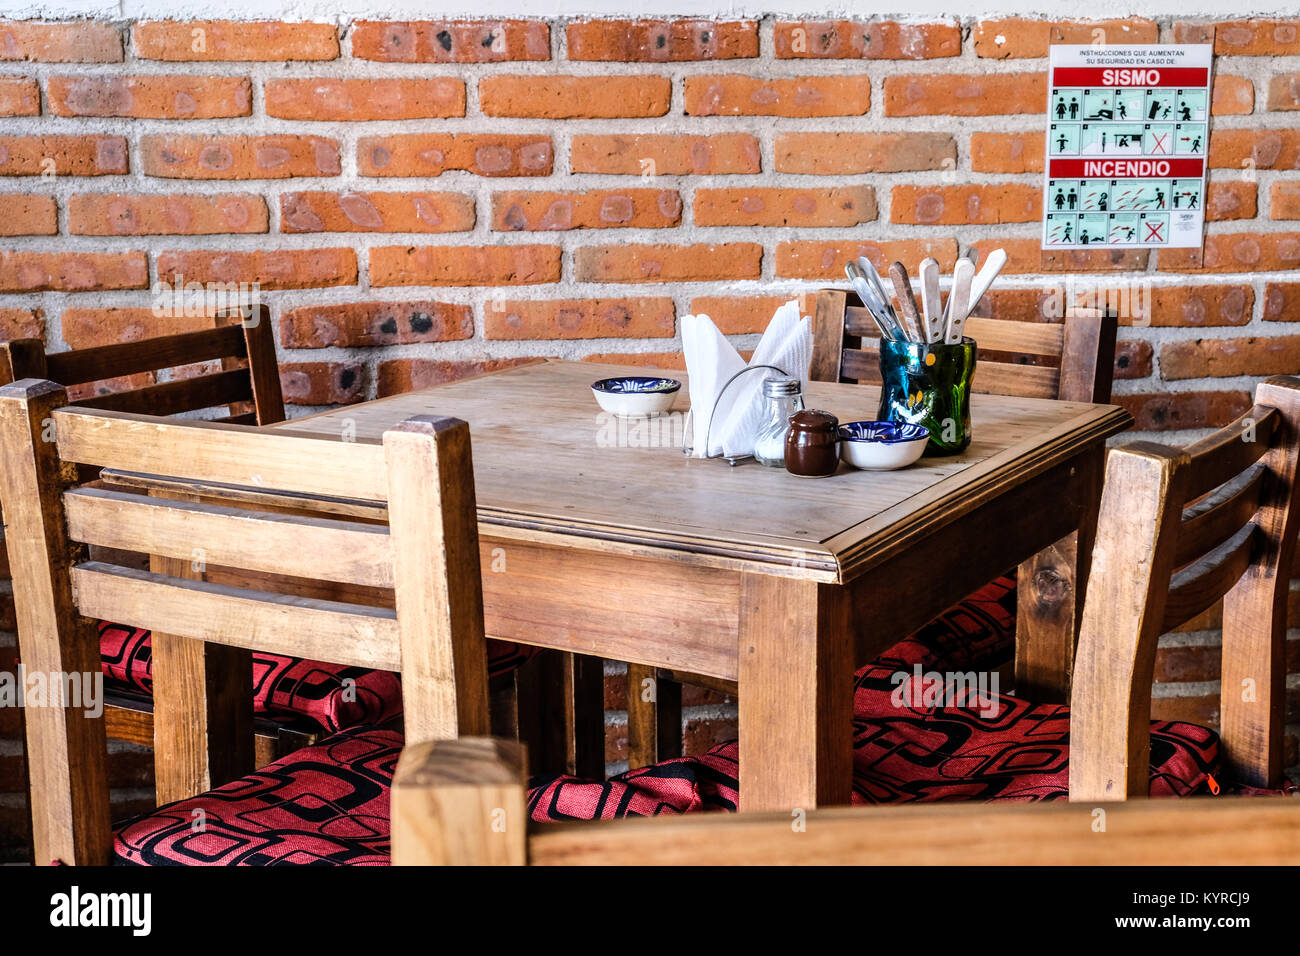 Einfachen hölzernen Esstisch und Stühlen in einem kleinen Straßenrand  mexikanische Lebensmittel Restaurant in San Miguel de Allende, Mexiko  Stockfotografie - Alamy